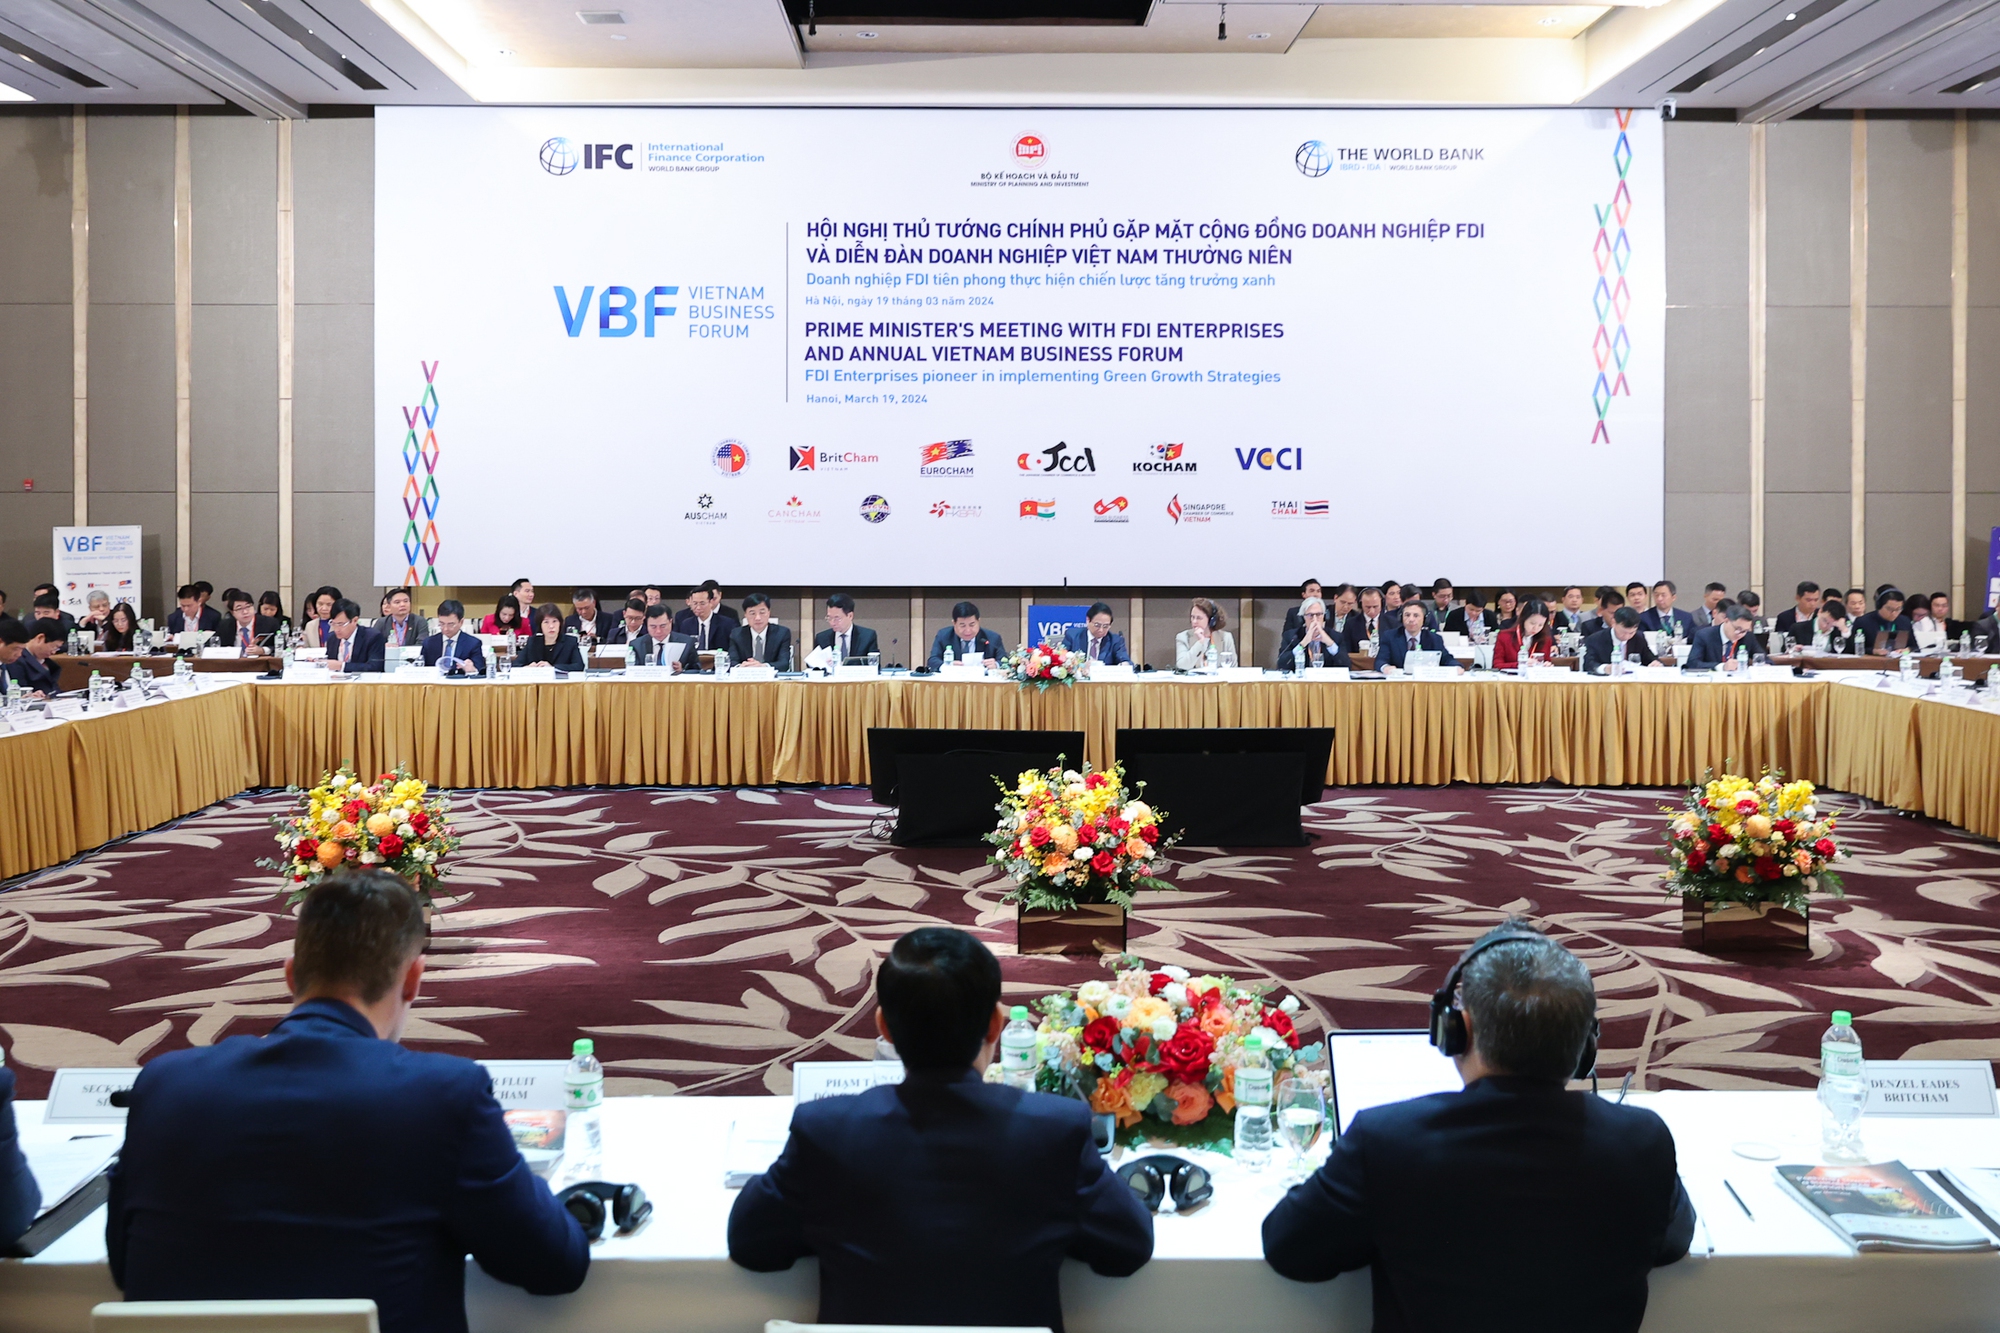 Tại Hội nghị, đại diện Hiệp hội doanh nghiệp các nước tại Việt Nam; các tập đoàn kinh tế đa quốc gia tại Việt Nam khuyến nghị nhằm cải thiện môi trường đầu tư kinh doanh tại Việt Nam - Ảnh: VGP/Nhật Bắc